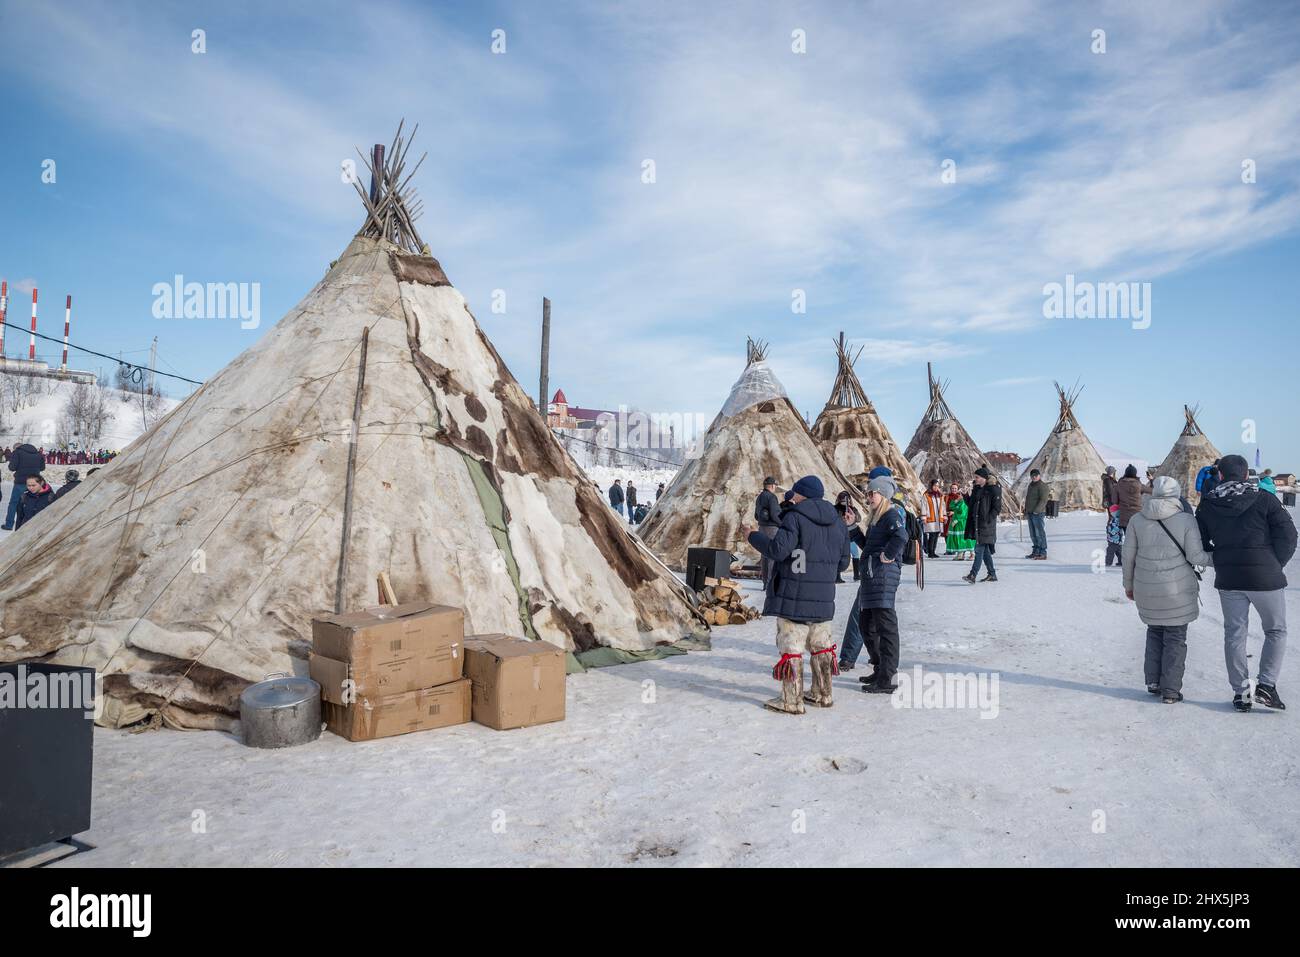 Traditionelles Rentierhaut-Chum (Zelte) beim Rentierhirten-Festival in Salekhard, Yamalo-Nenzen Autonomous Okrug, Russland Stockfoto